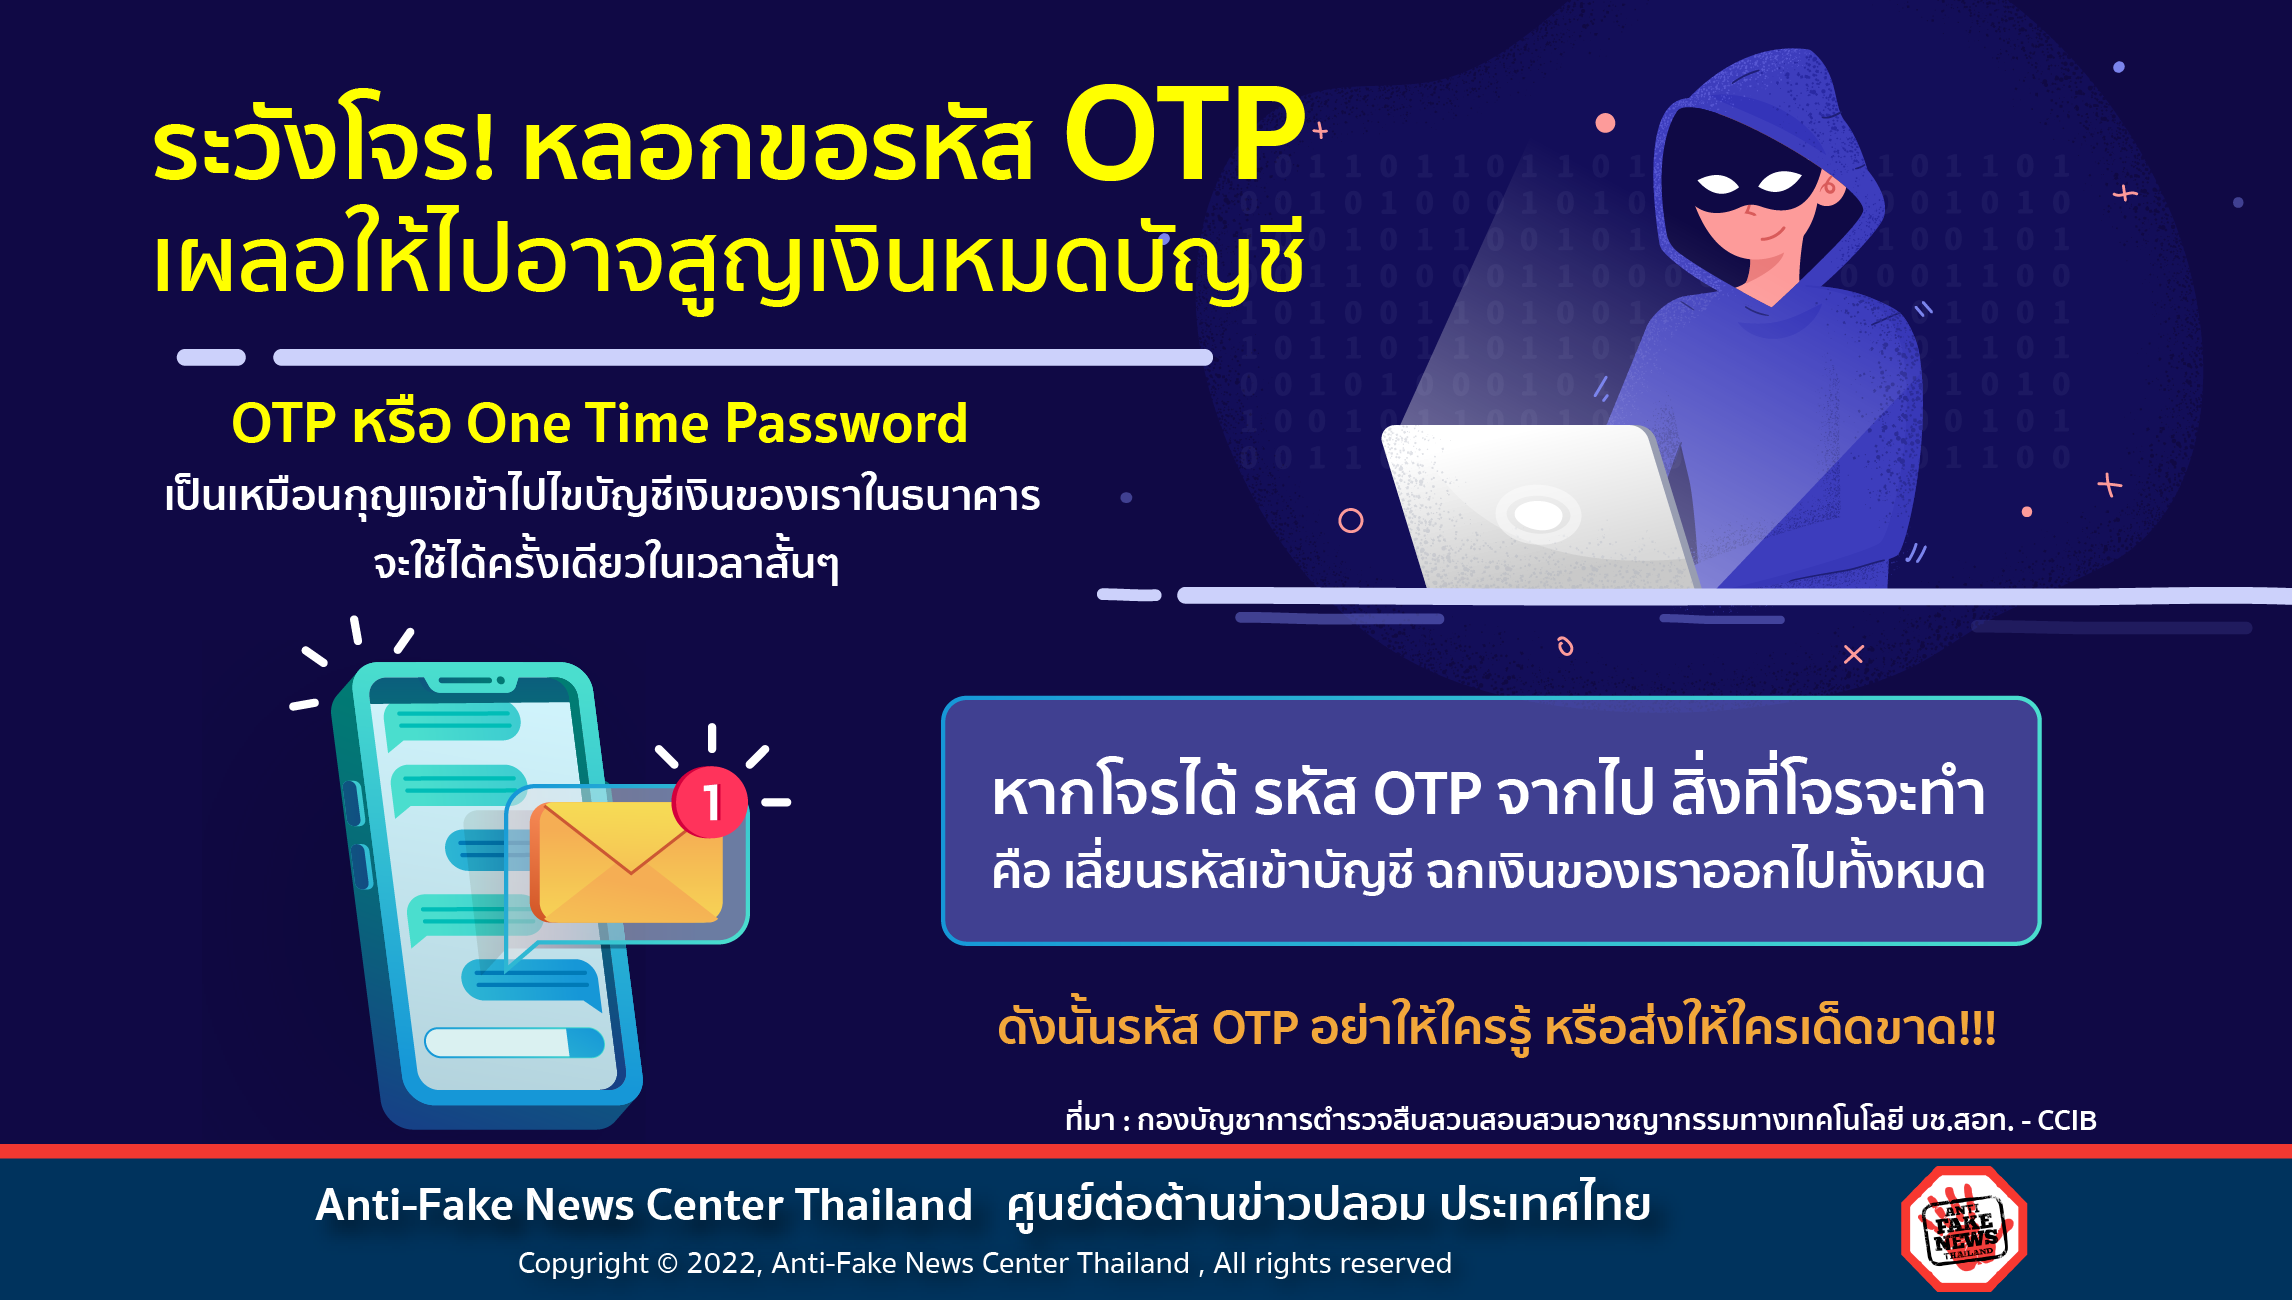 หลอกขอรหัส OTP เผลอให้ไปอาจสูญเงินหมดบัญชี Website